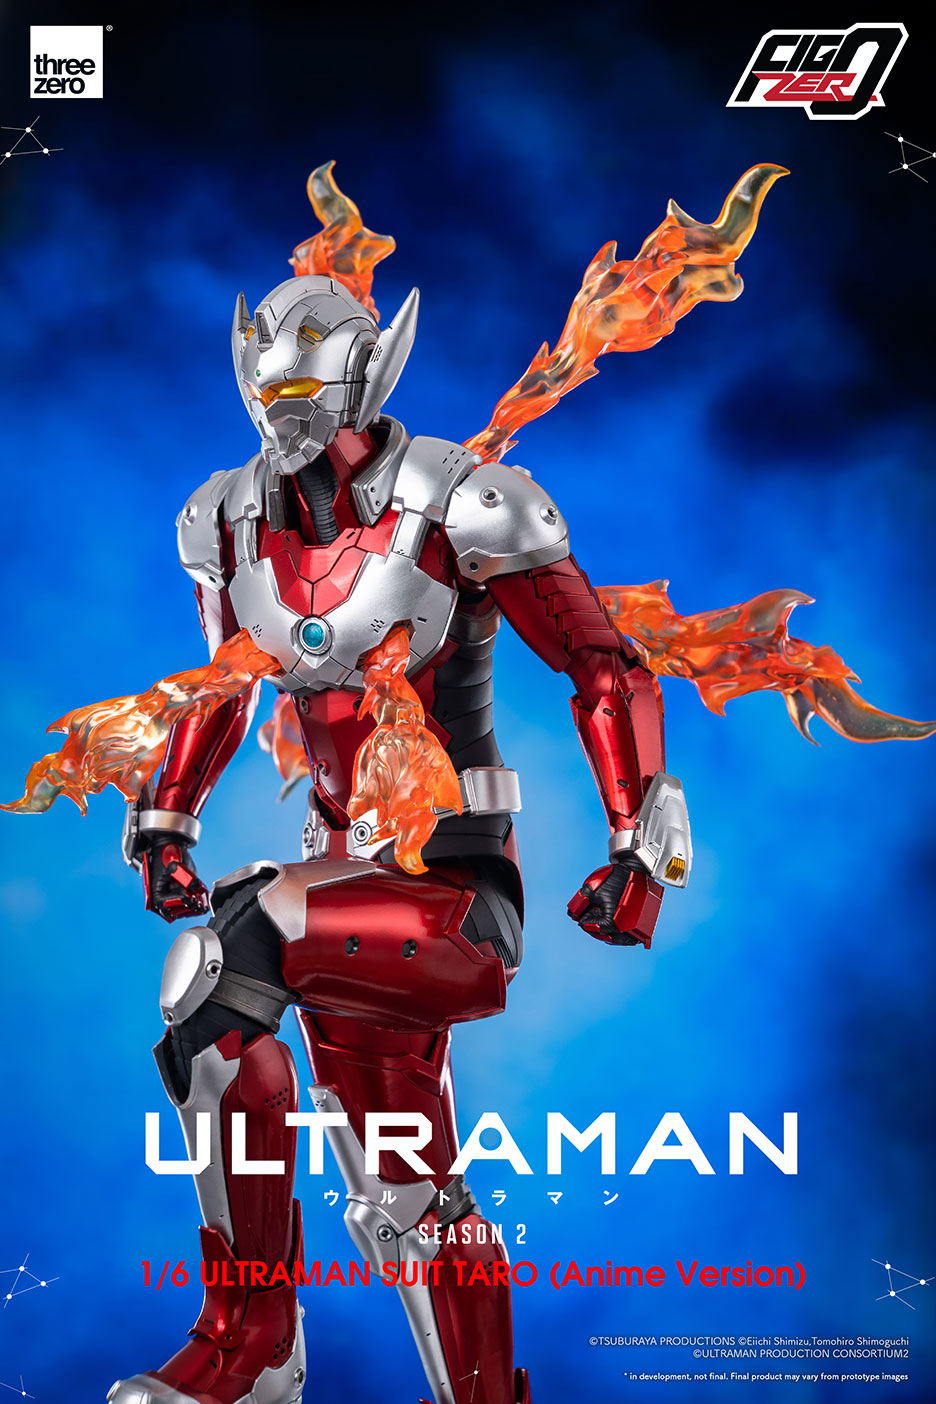 threezero - FigZero - Netflix's Ultraman - Ultraman Suit Taro (1/6 Scale)